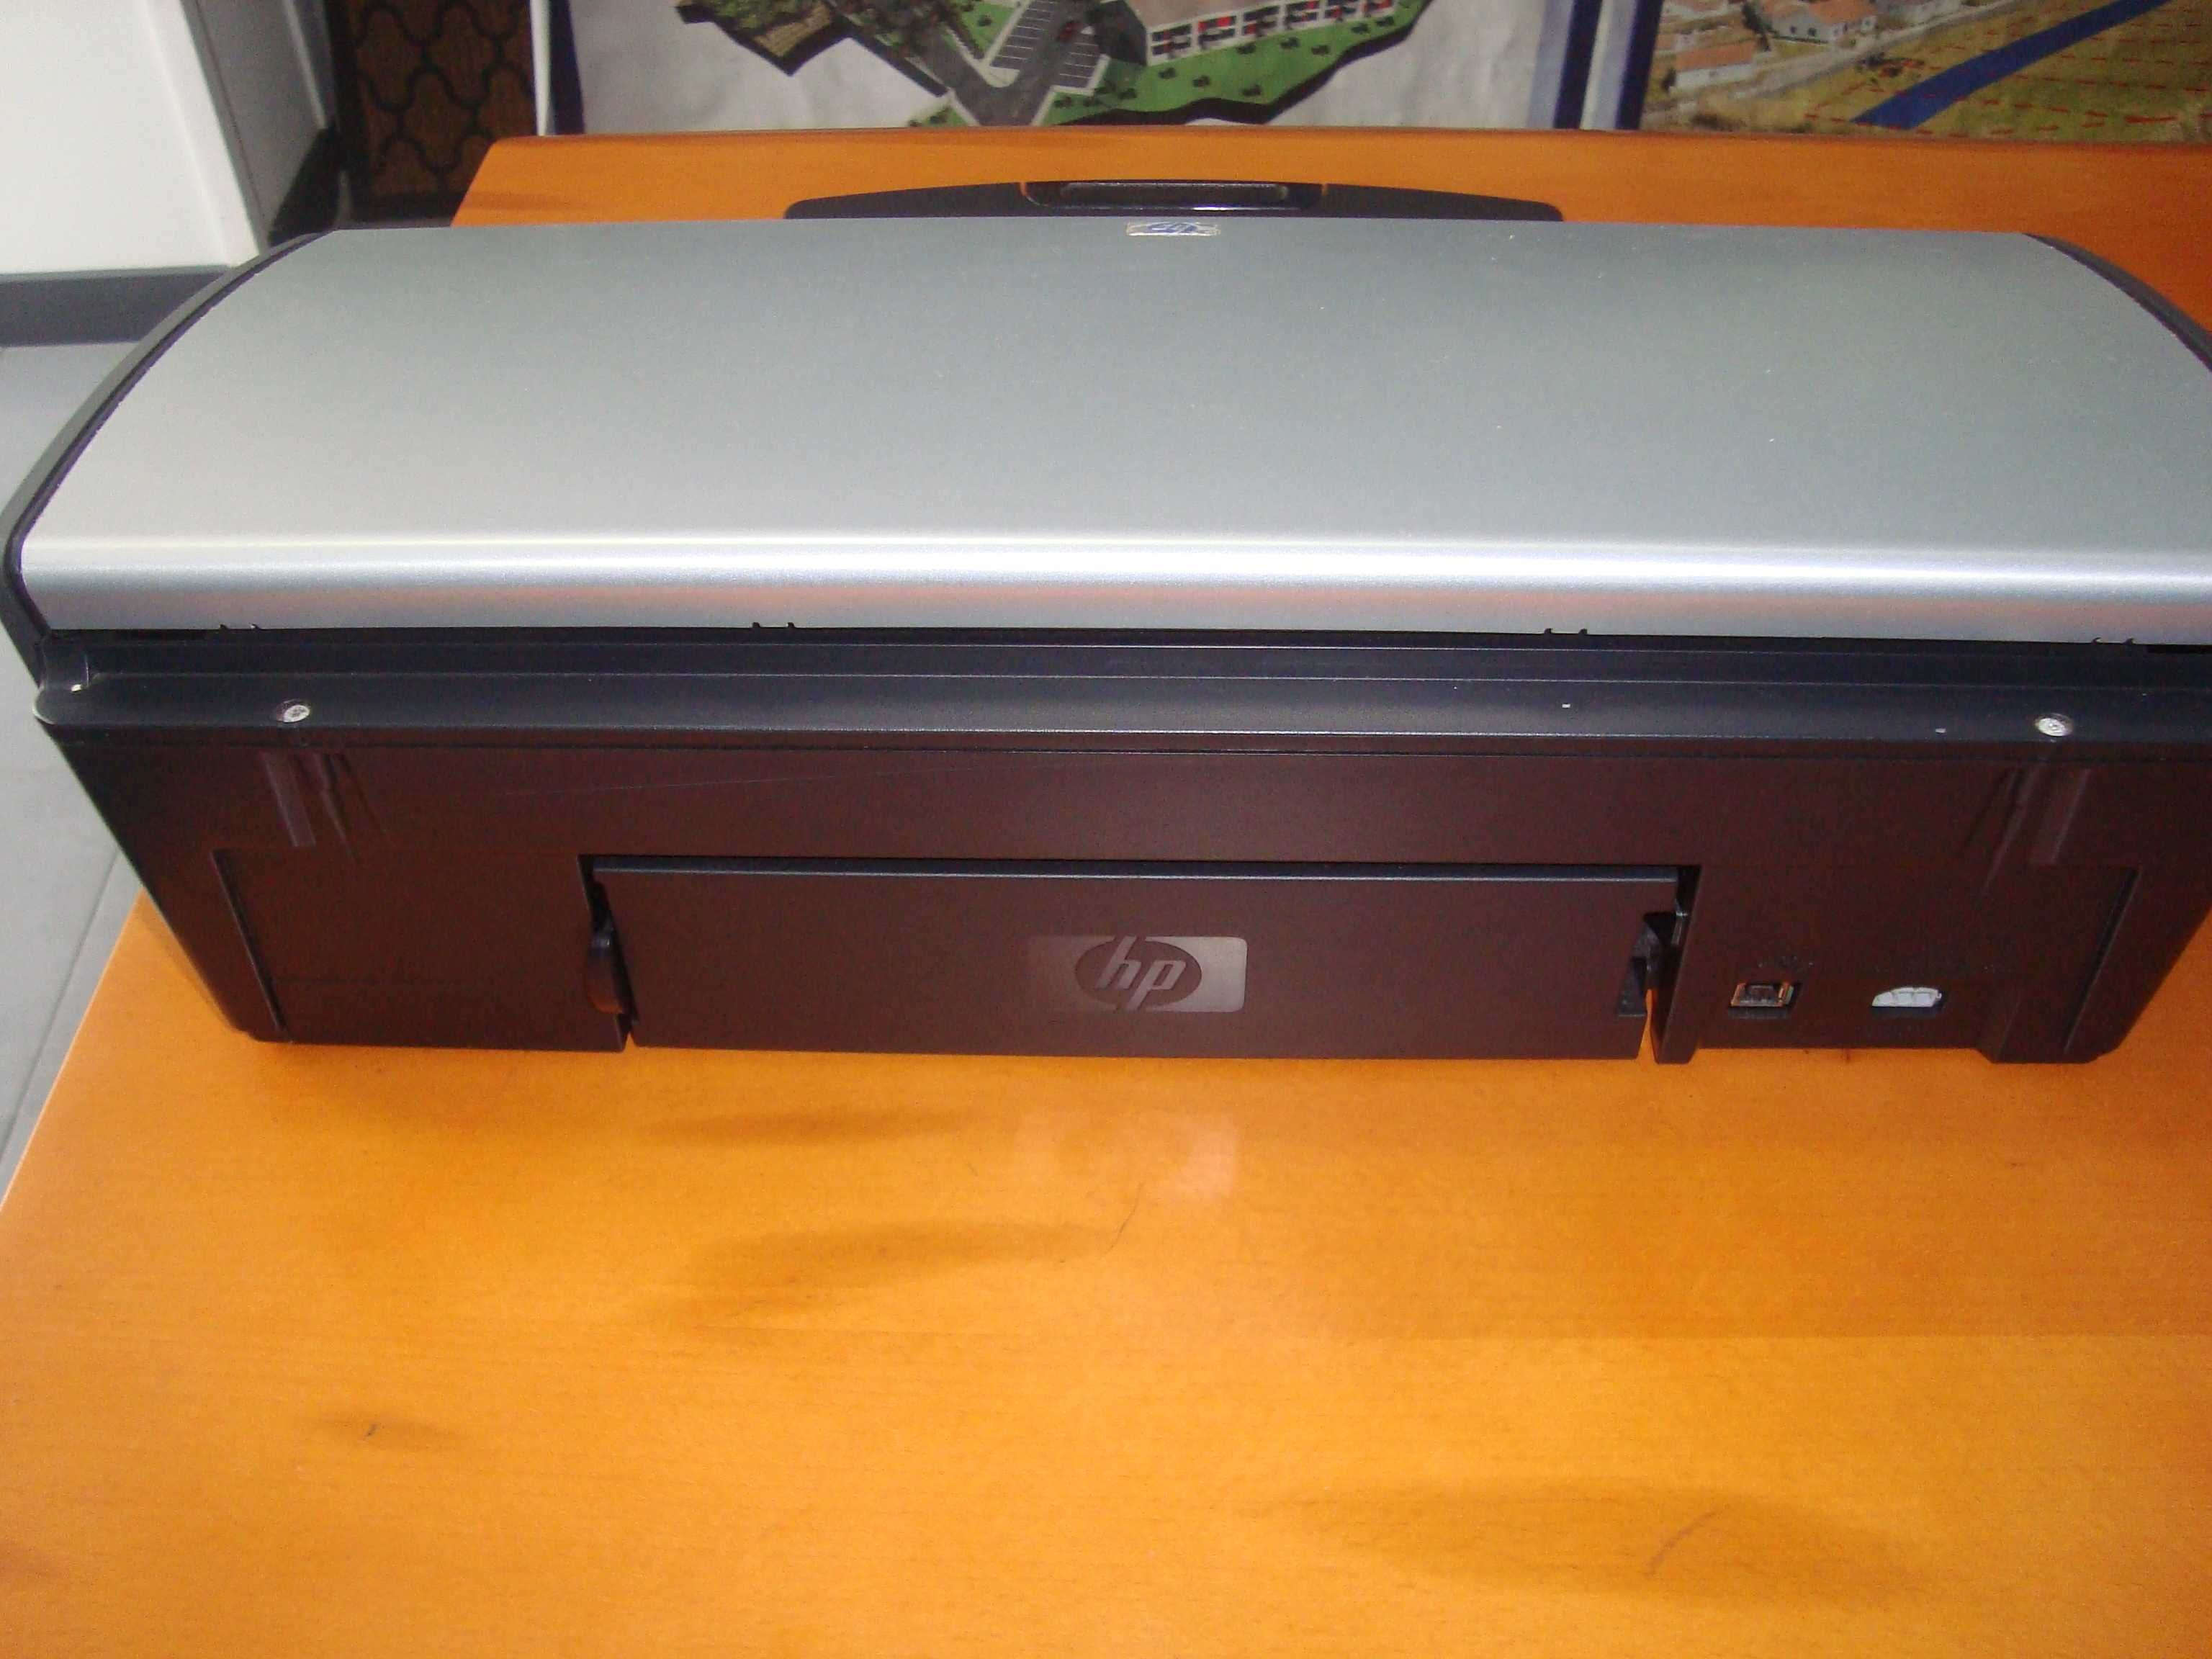 Impressora HP Deskjet 5940 usada